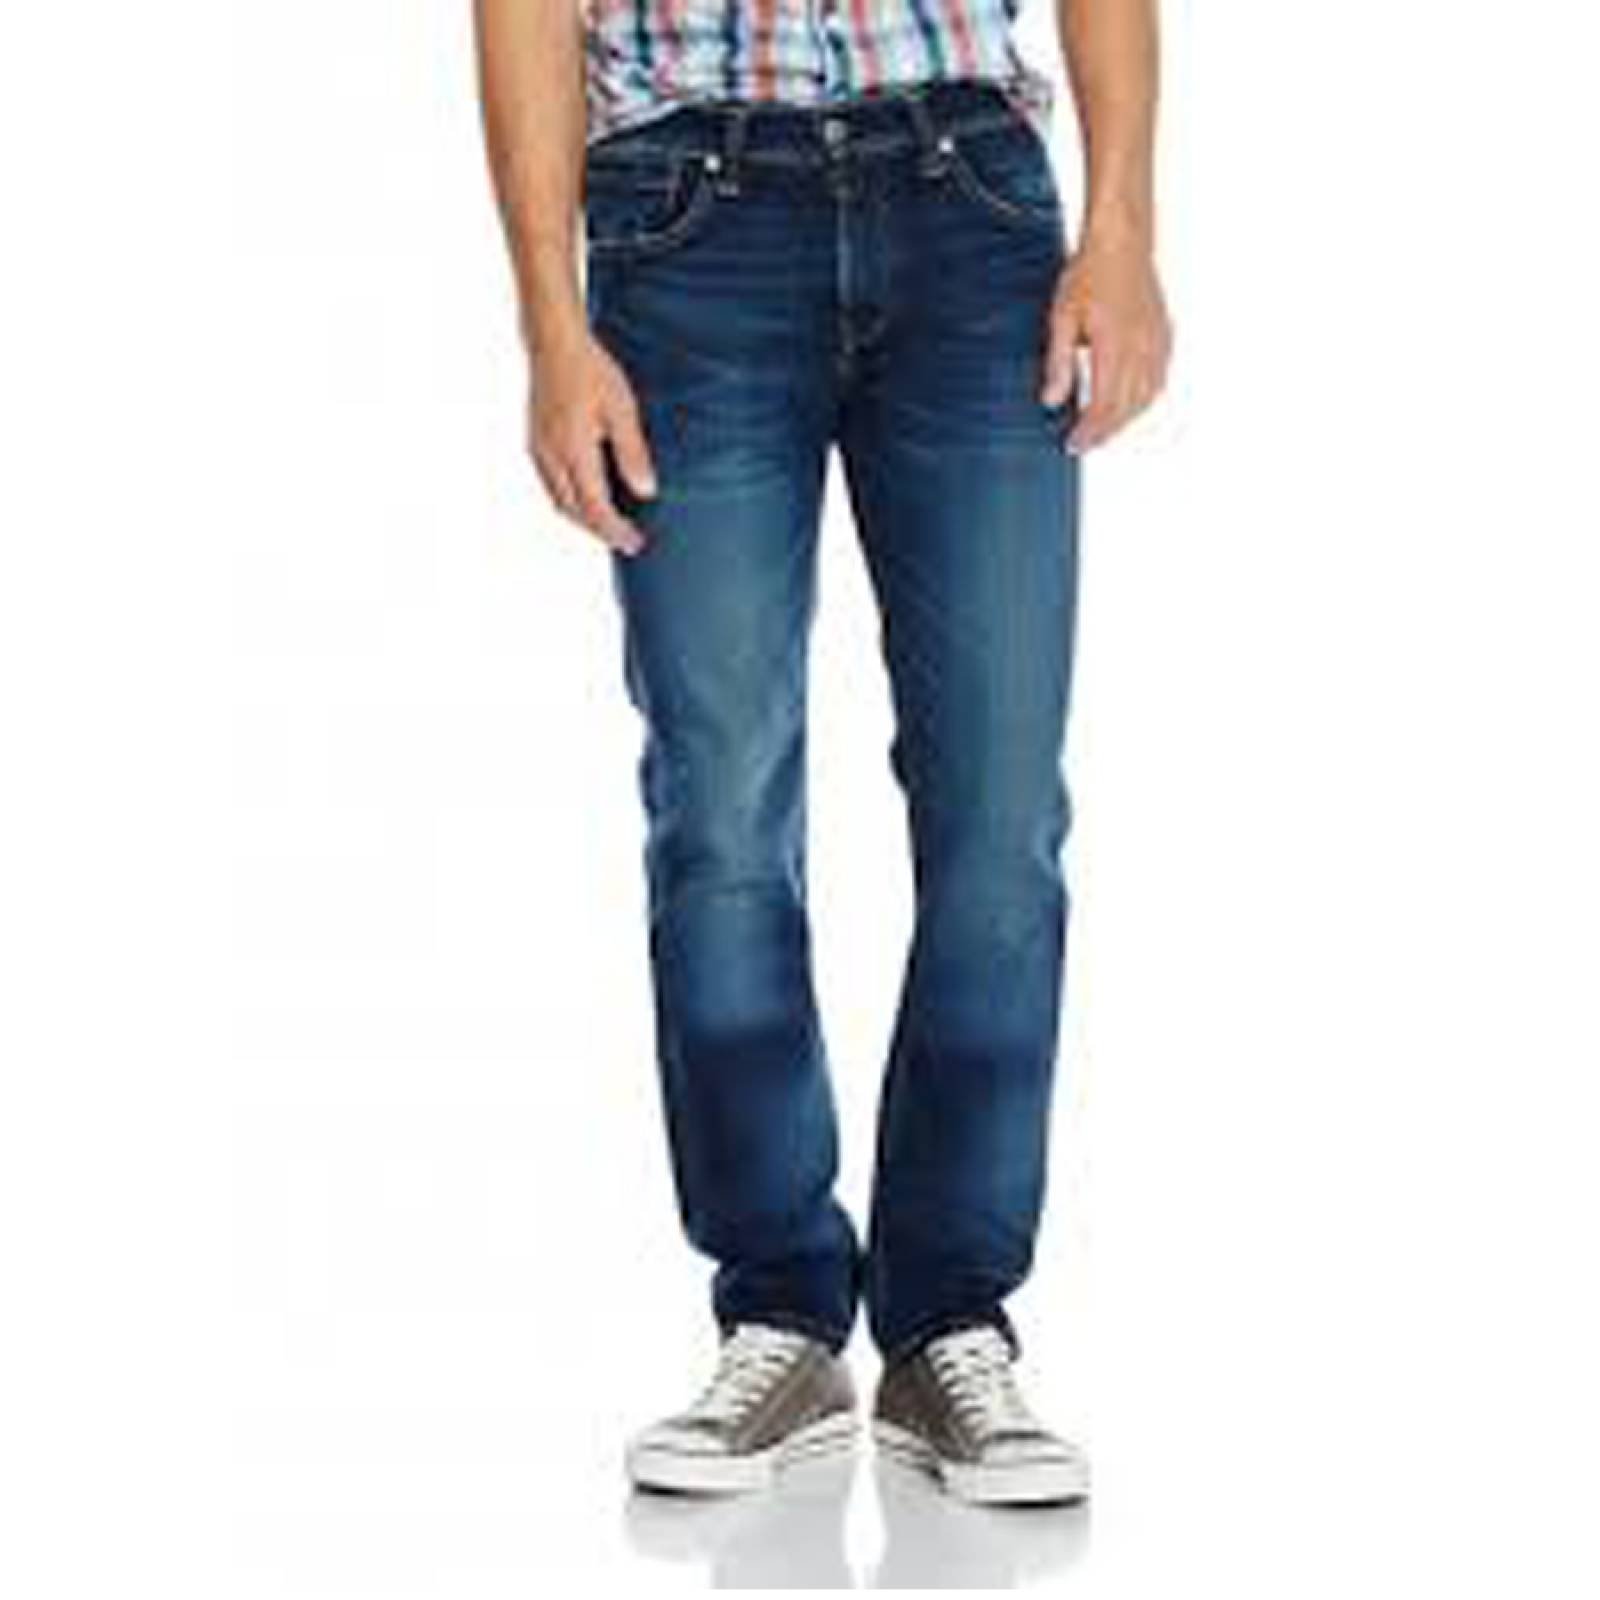 Jeans Levis 511 Slim Fit 045113571